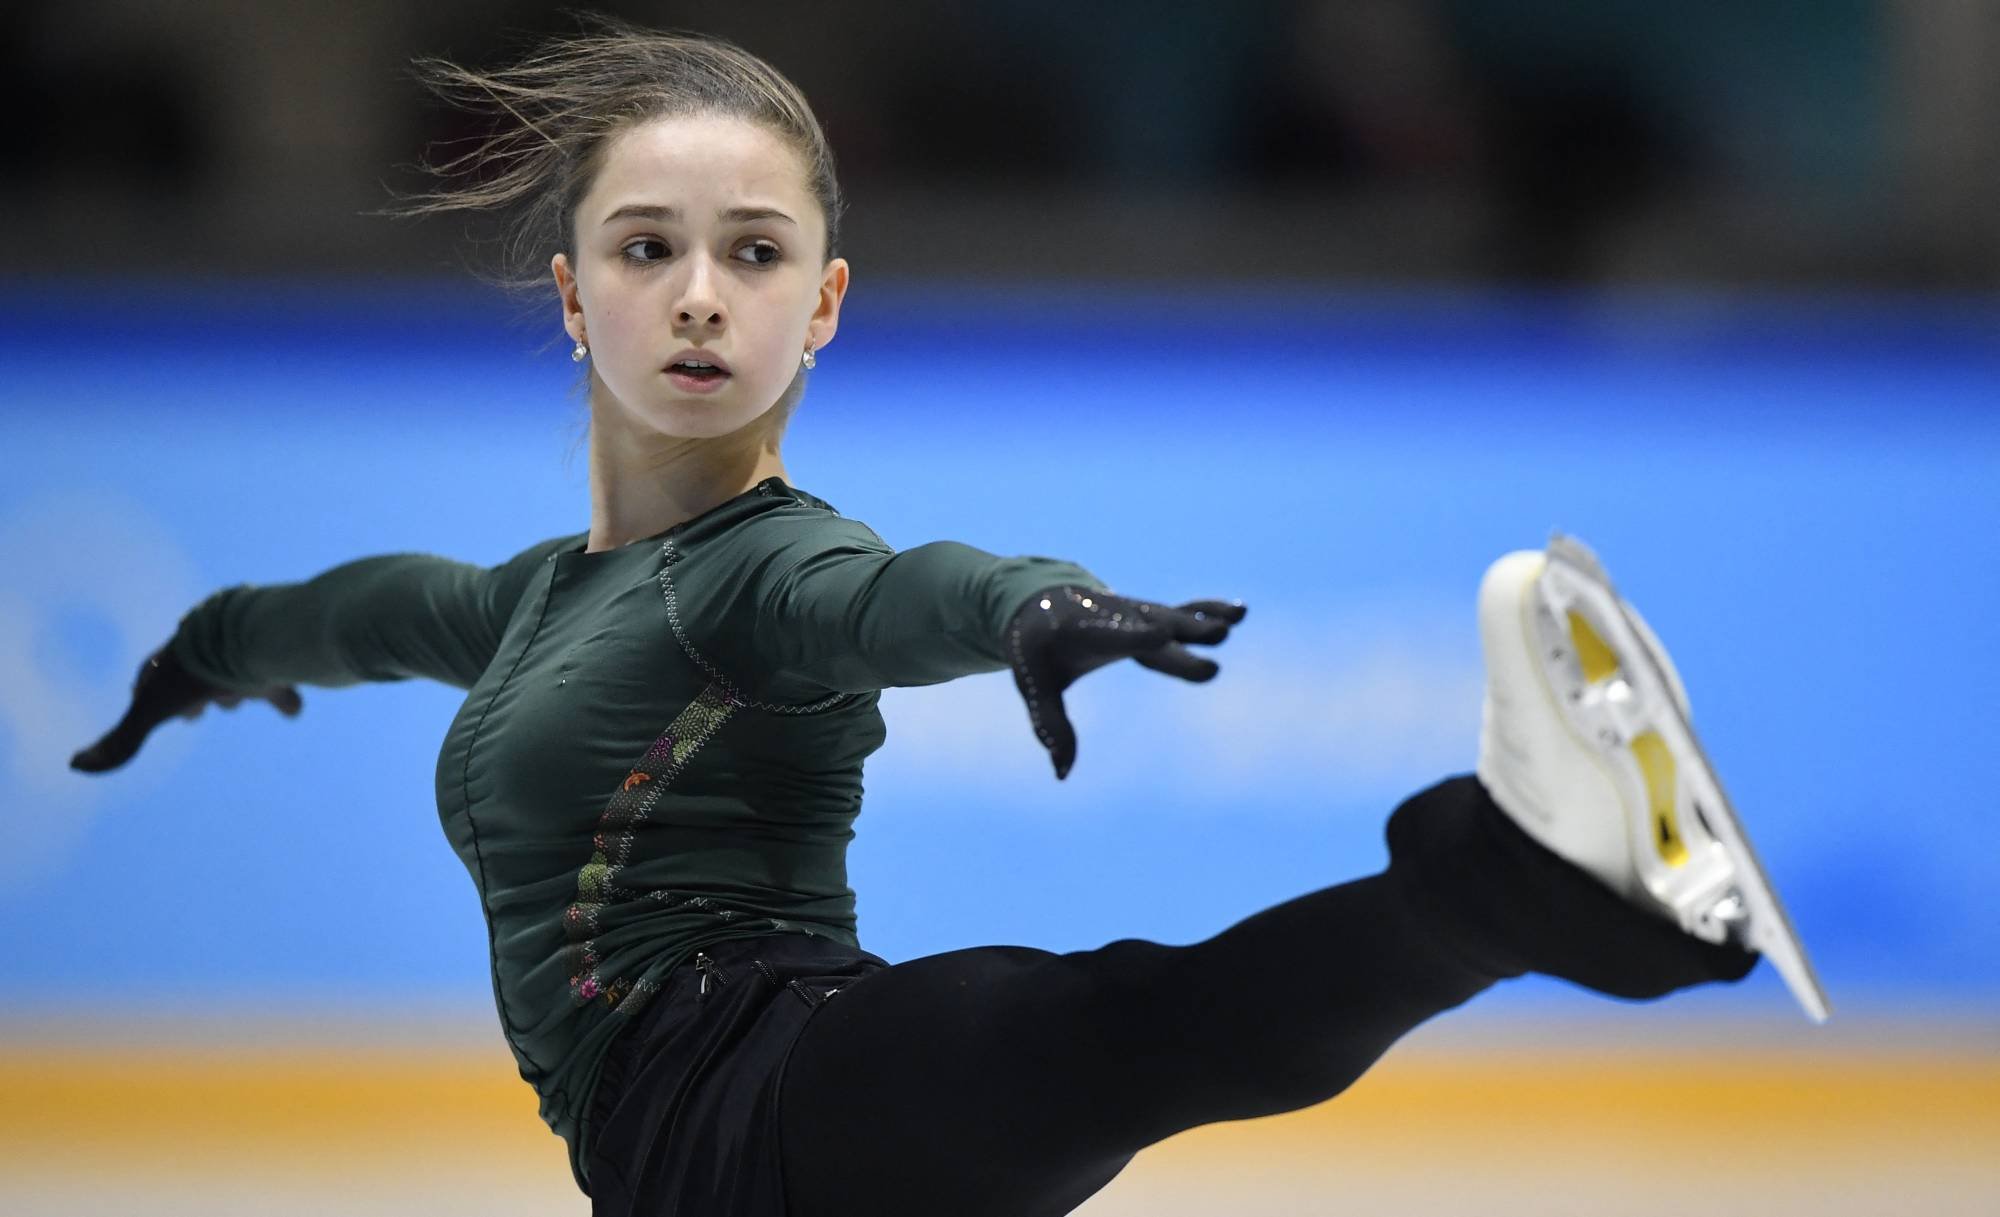  Controlul pozitiv al patinatoarei Kamila Valieva, confirmat. A luat trimetazidină